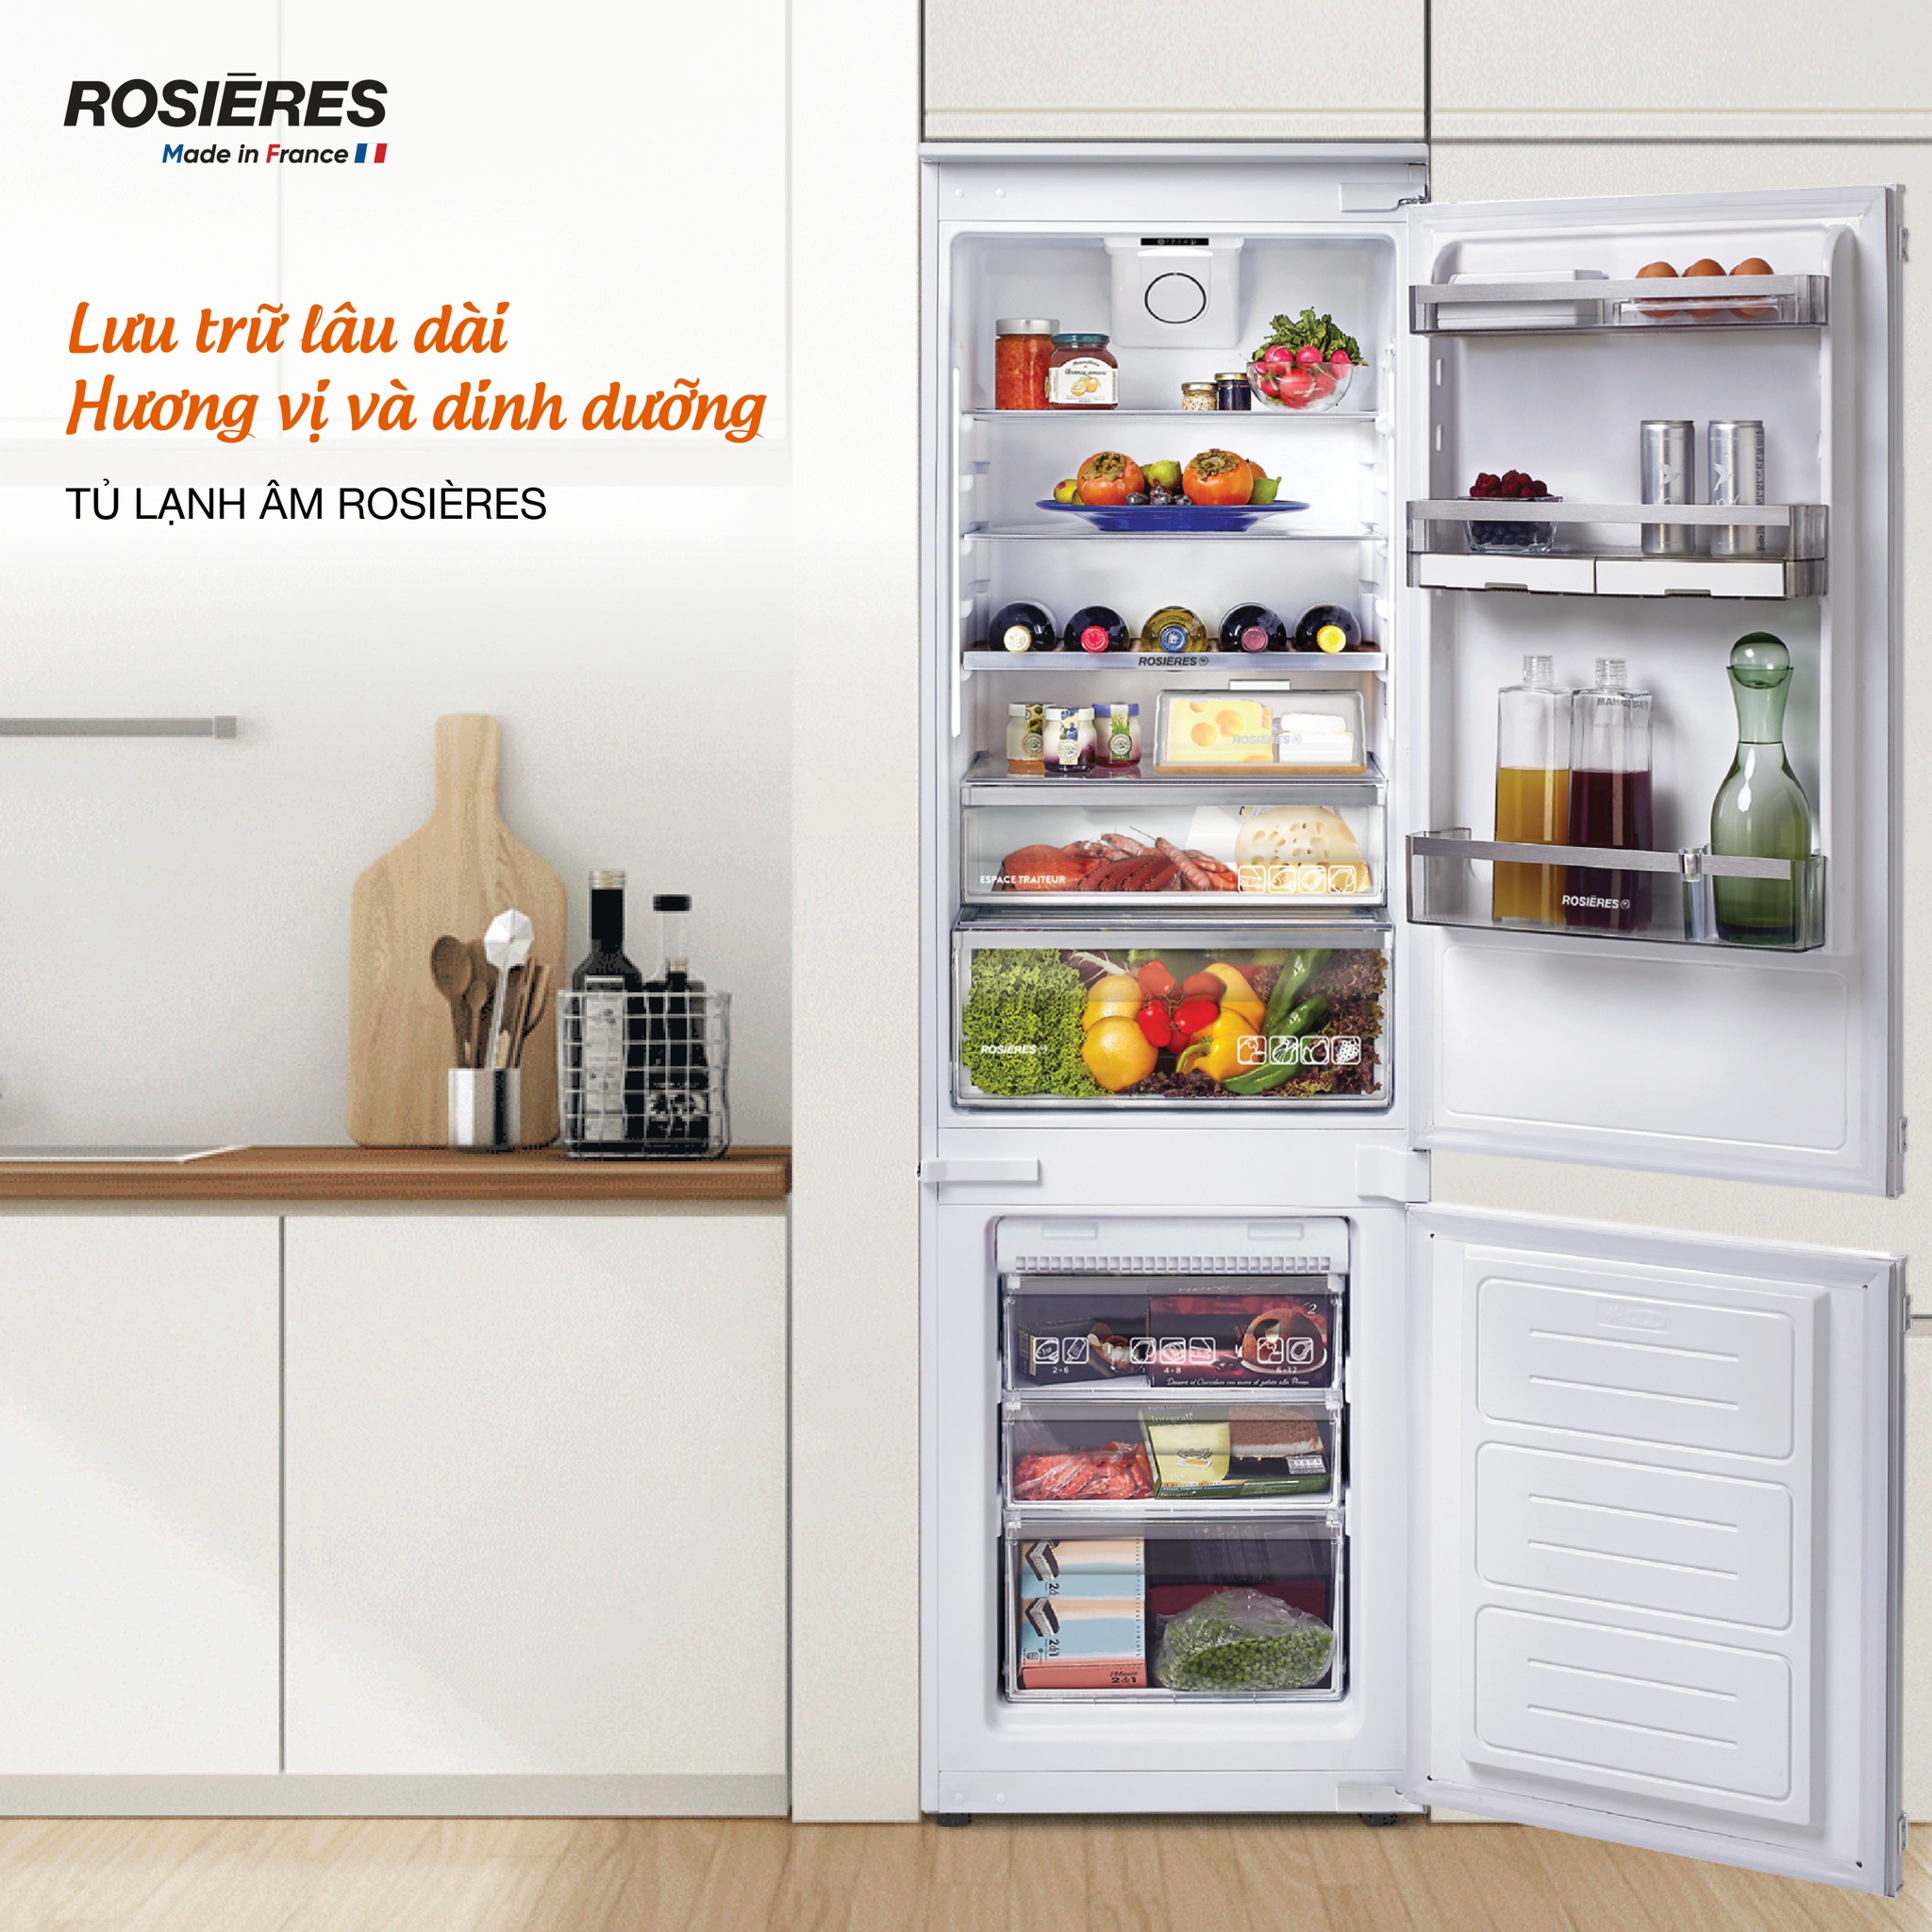 Tủ lạnh chạy bao lâu thì tự ngắt 1 lần – tủ lạnh chạy liên tục không ngắt –  Sửa Điện Lạnh Uy Tín